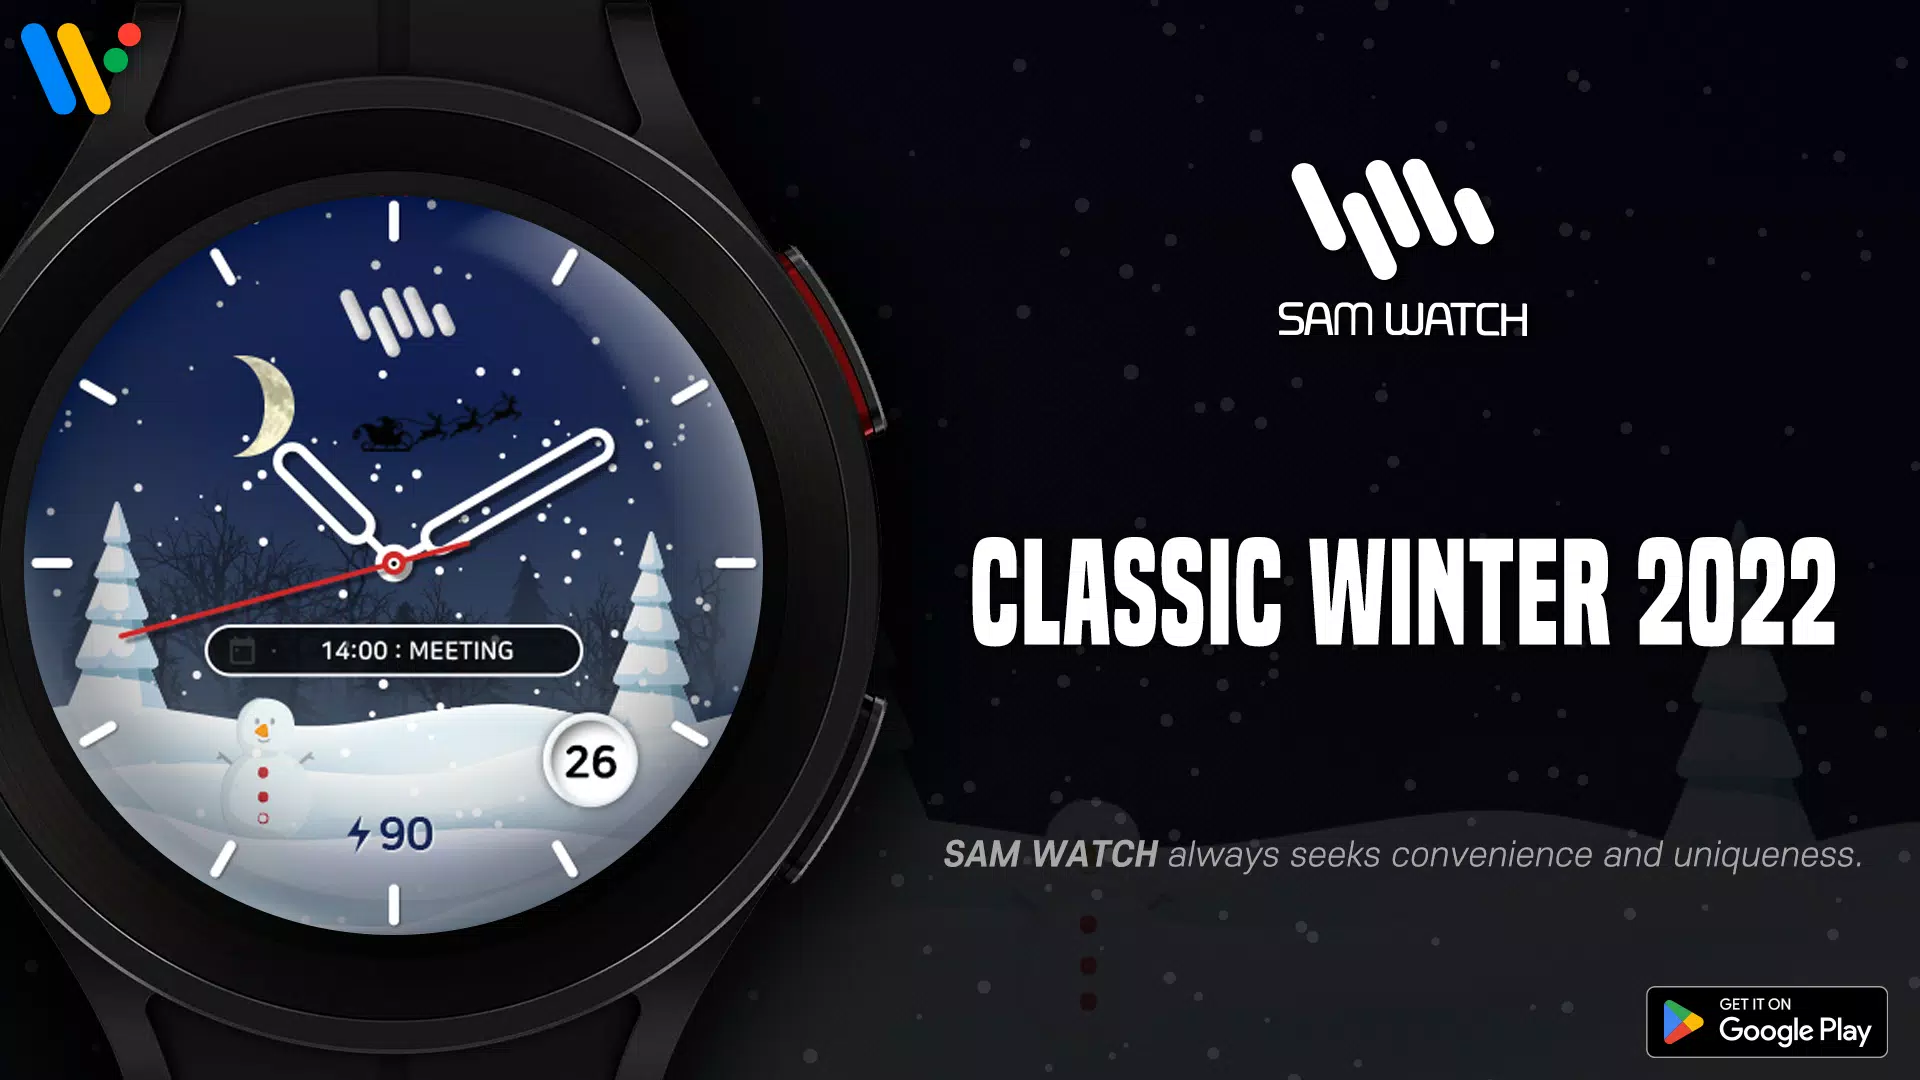 SamWatch Classic là ứng dụng Android hoàn hảo để kết nối và cấu hình chiếc đồng hồ Galaxy yêu thích của bạn một cách dễ dàng. Với SamWatch Classic, bạn sẽ được truy cập vào tất cả các tính năng được yêu cầu và cấu hình để làm cho chiếc đồng hồ của bạn trở nên cá tính hơn.